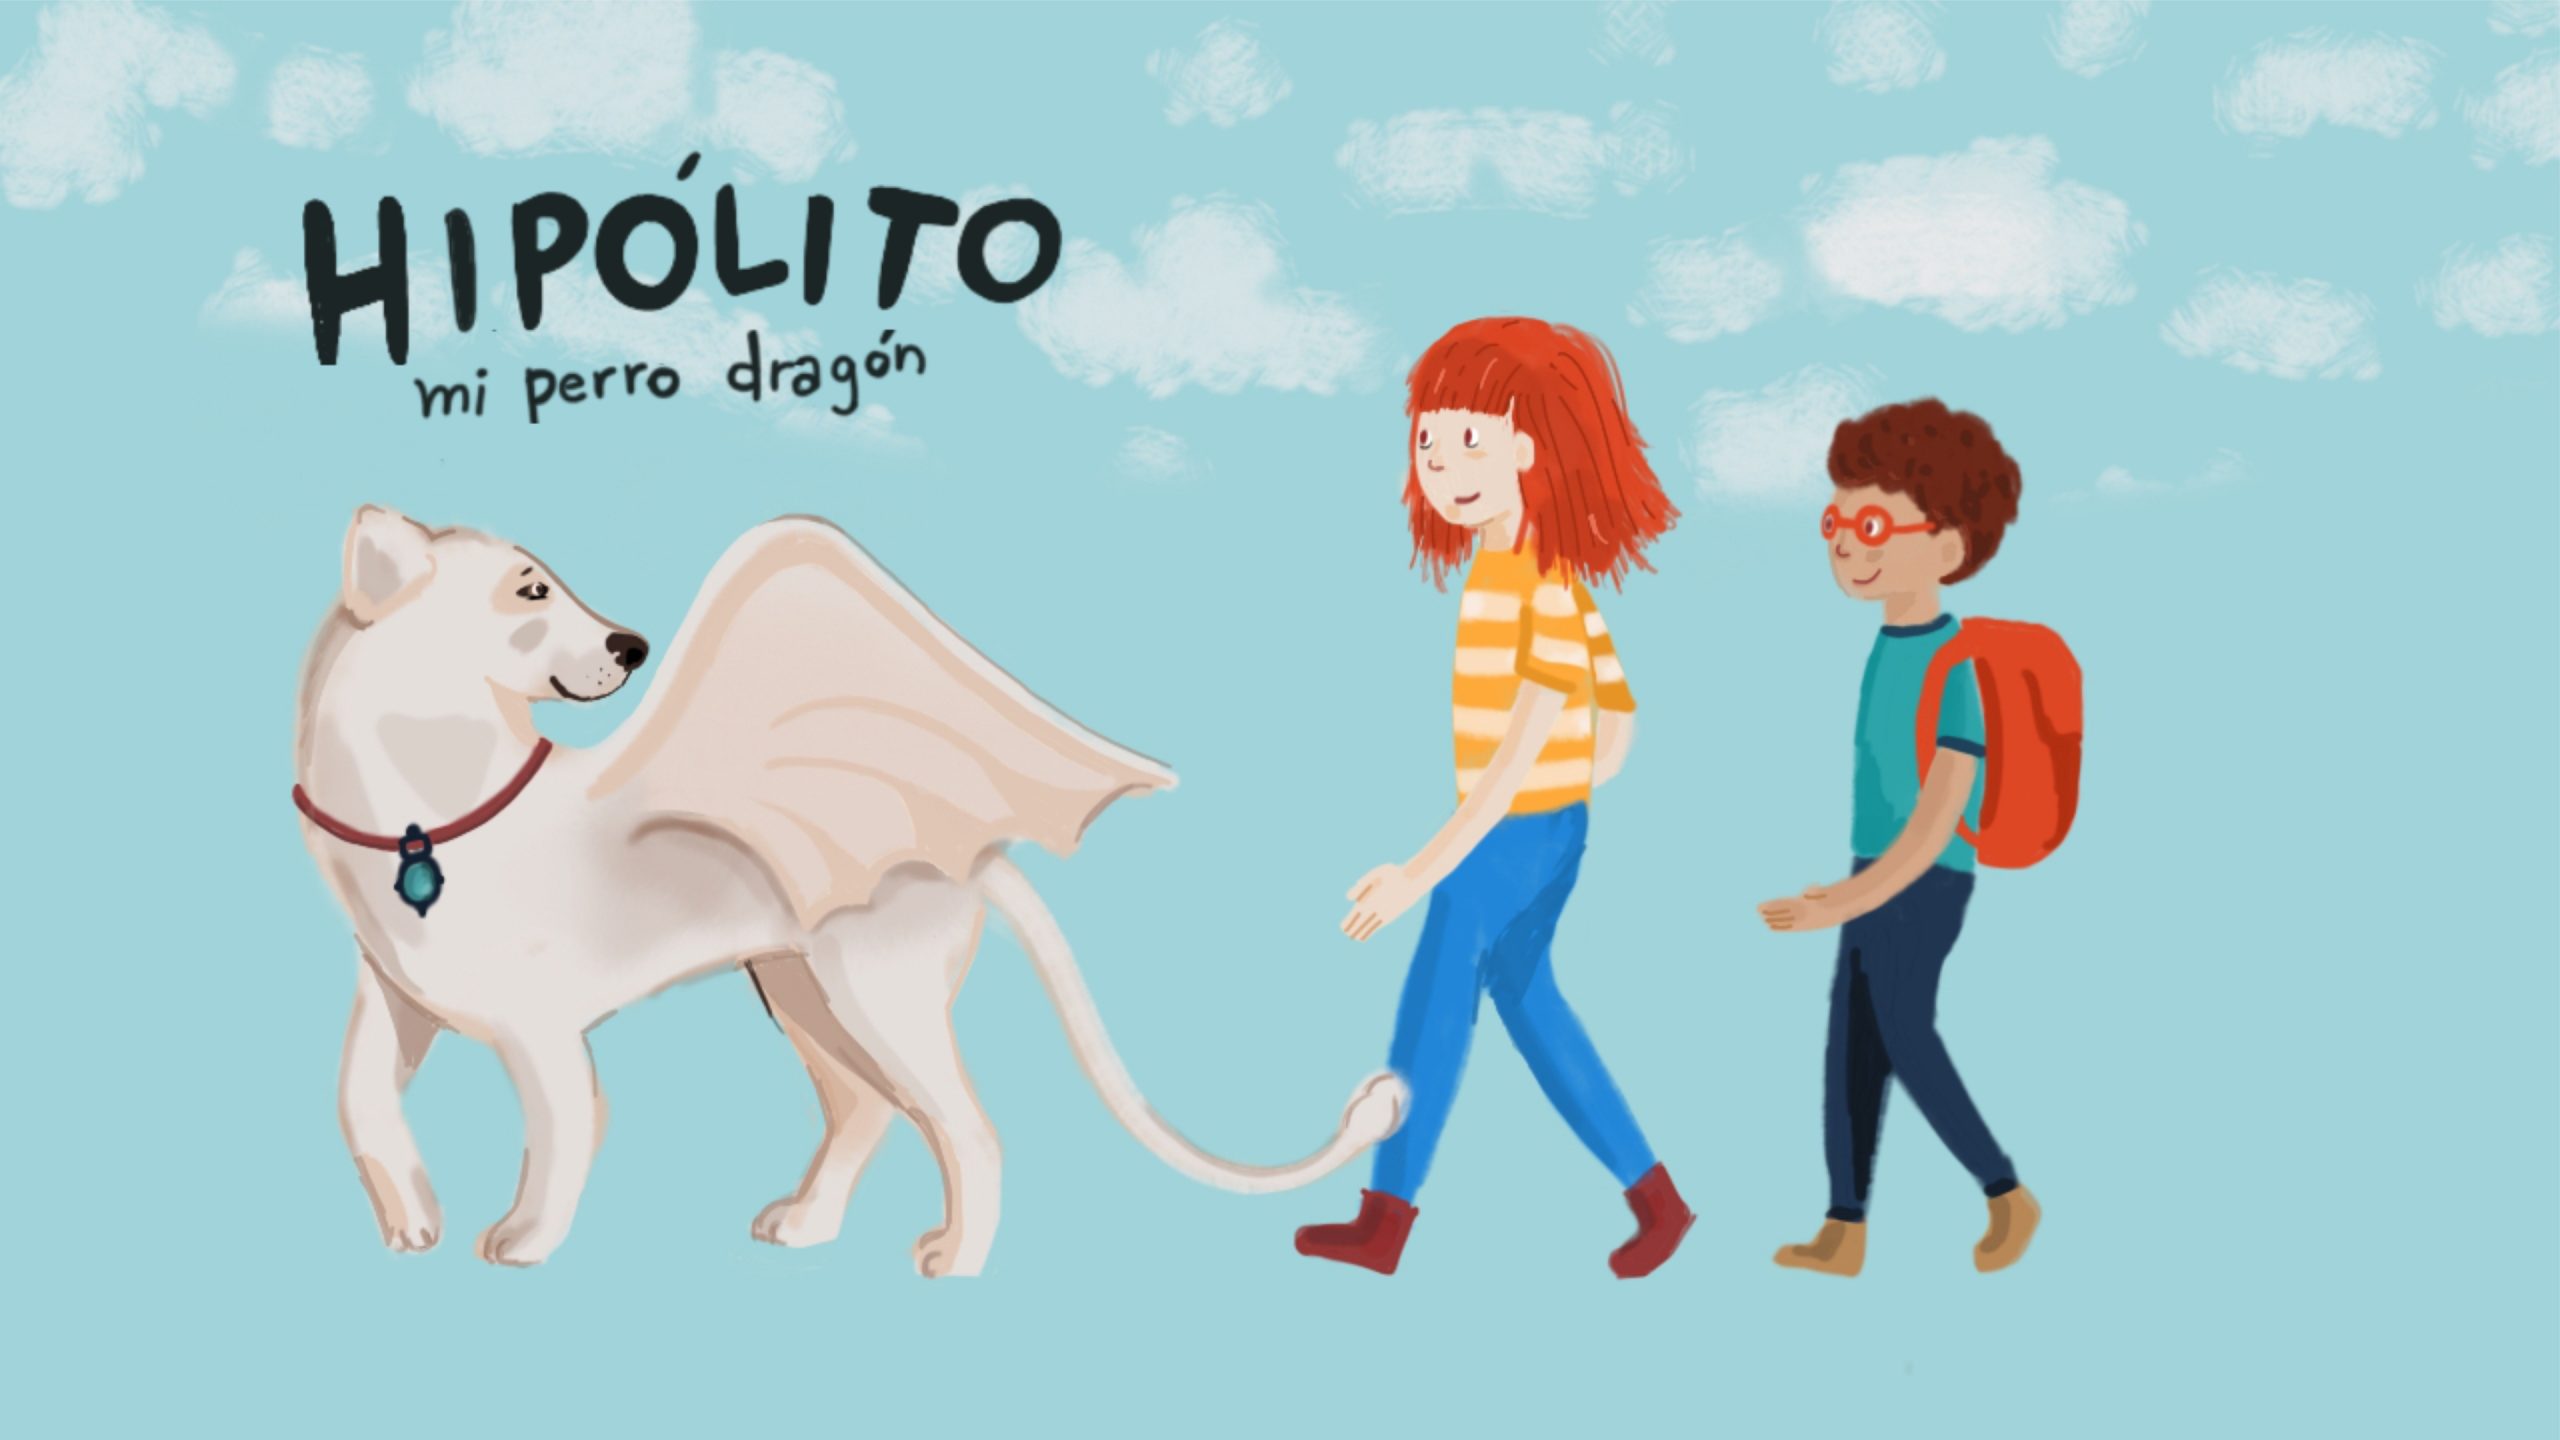 Portada libro Hipolito mi perro dragon, se ve a un perro con alas de dragon una niña y un niño